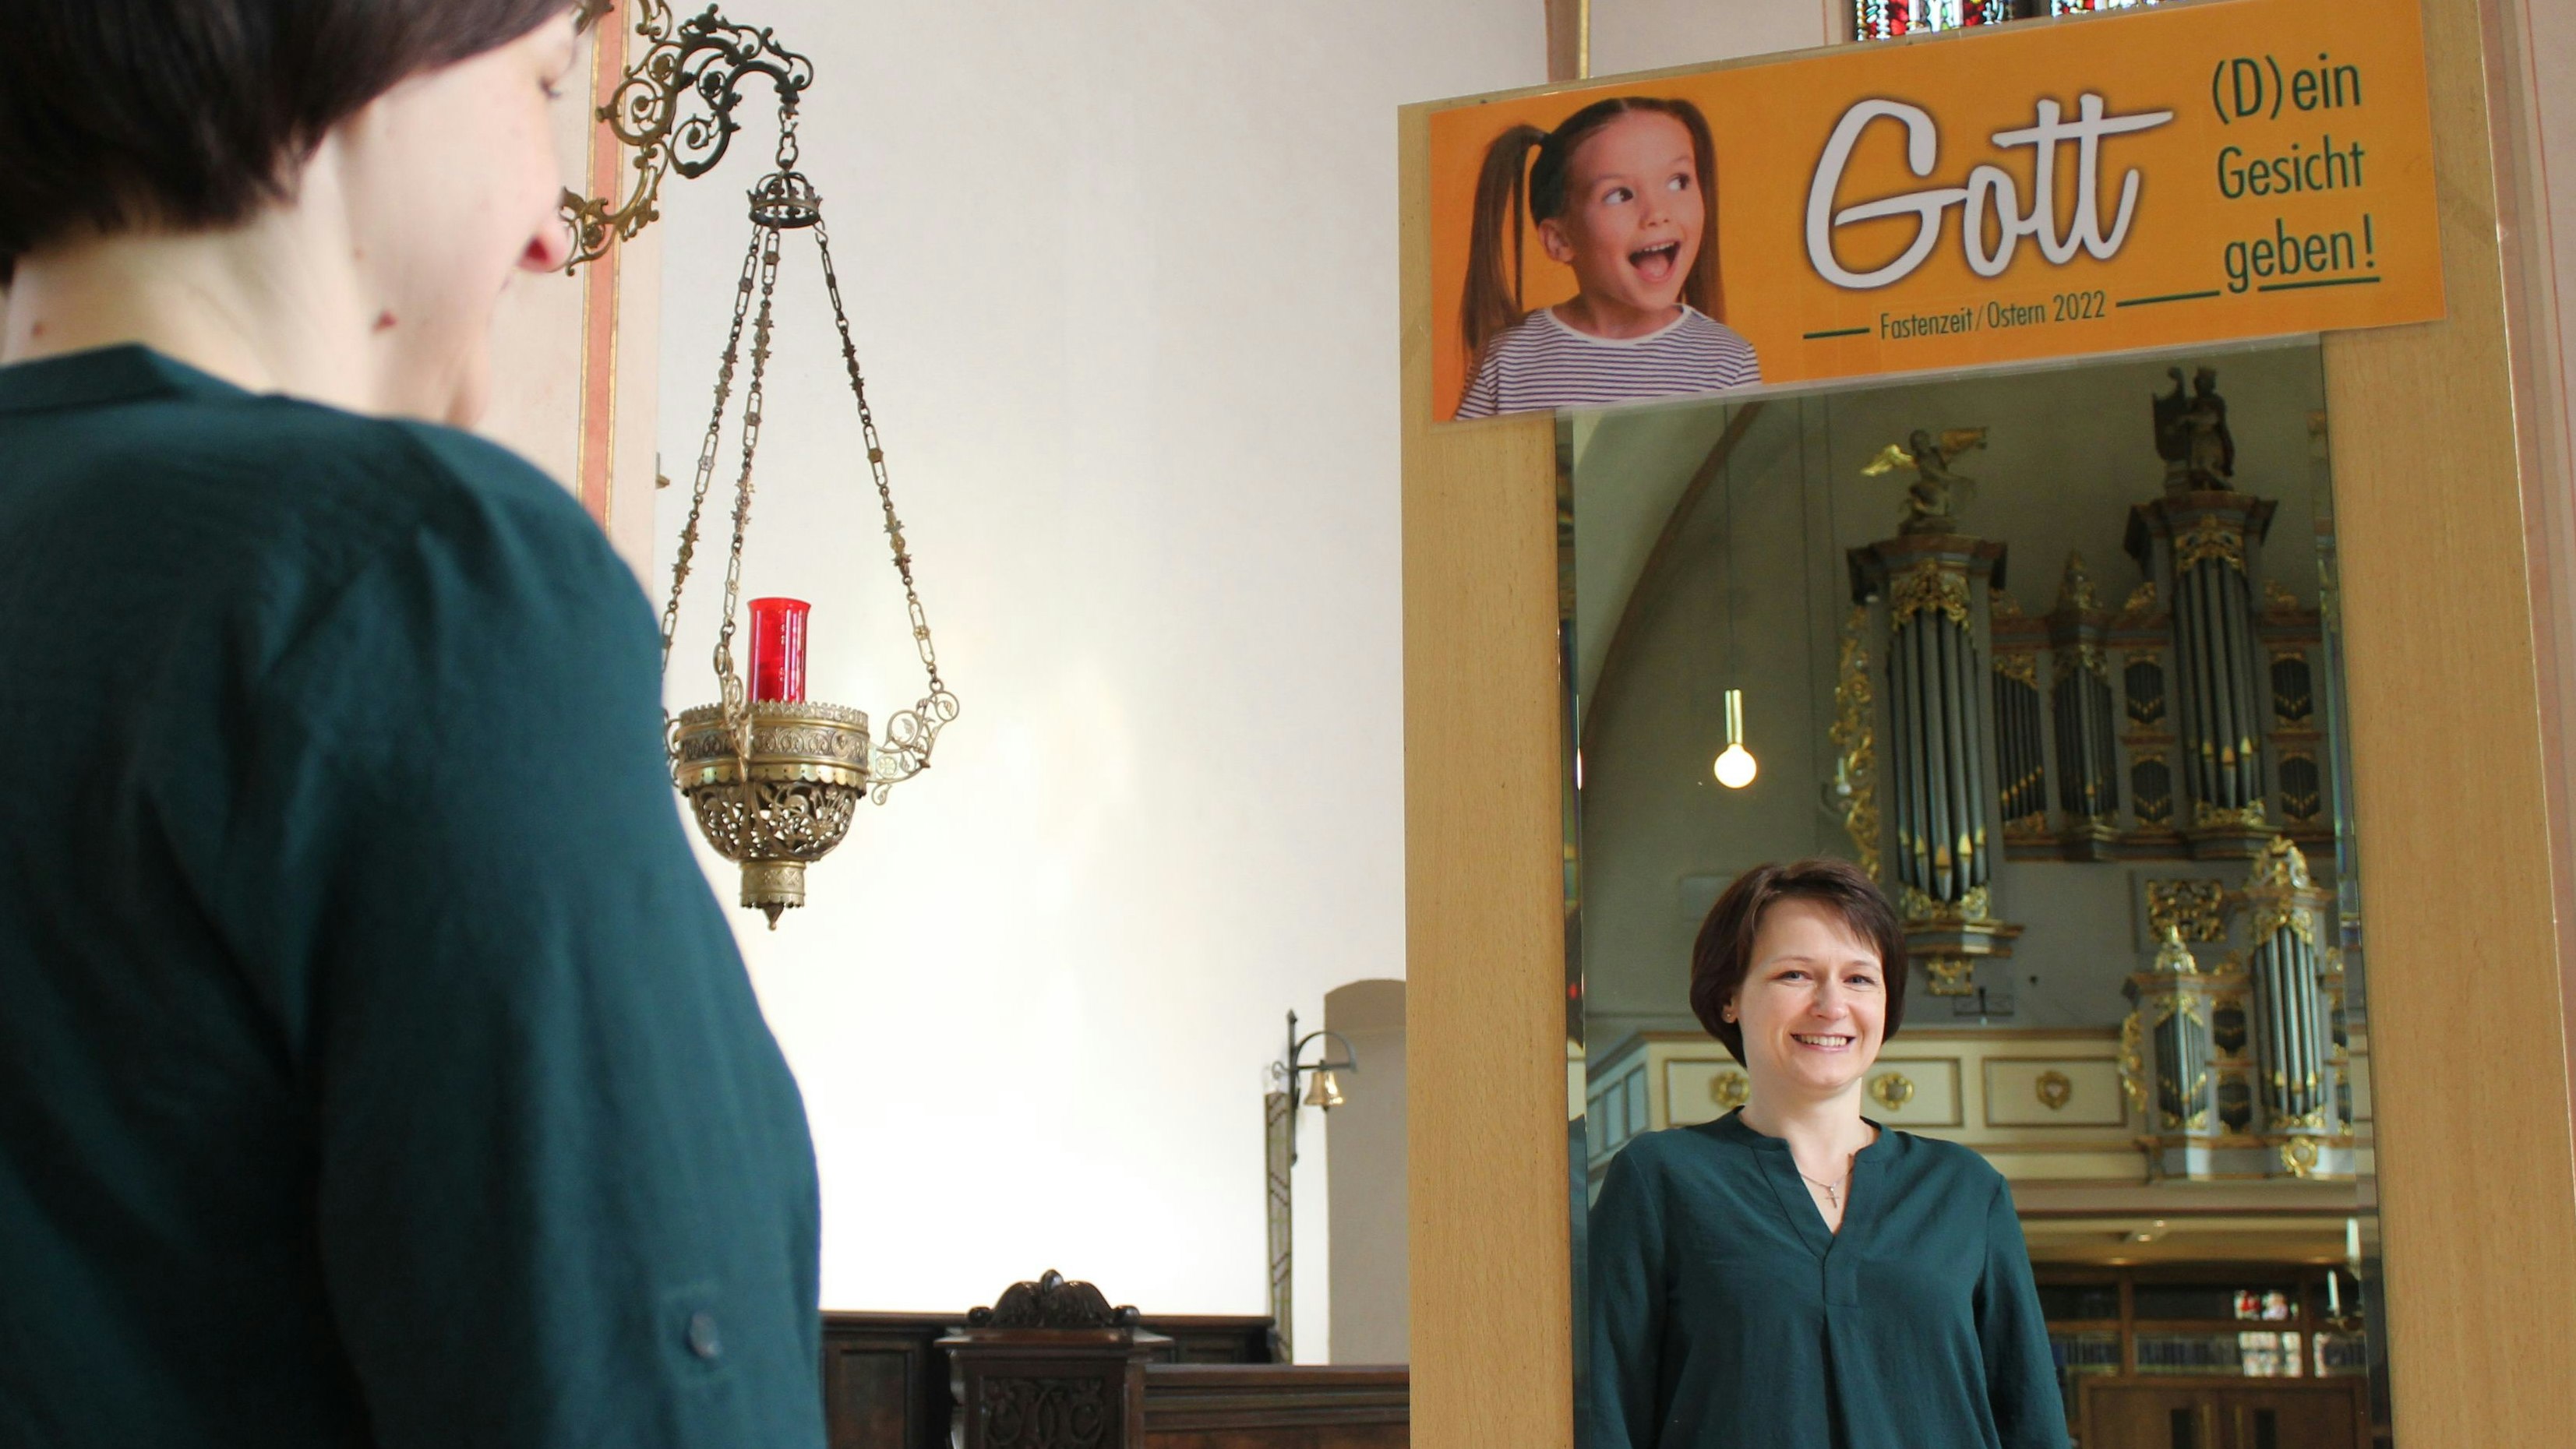 Gott (d)ein Gesicht geben: Lilia Kislin ist die neue Küsterin in der Pfarrkirche Molbergen.&nbsp; &nbsp;Foto: Hoff